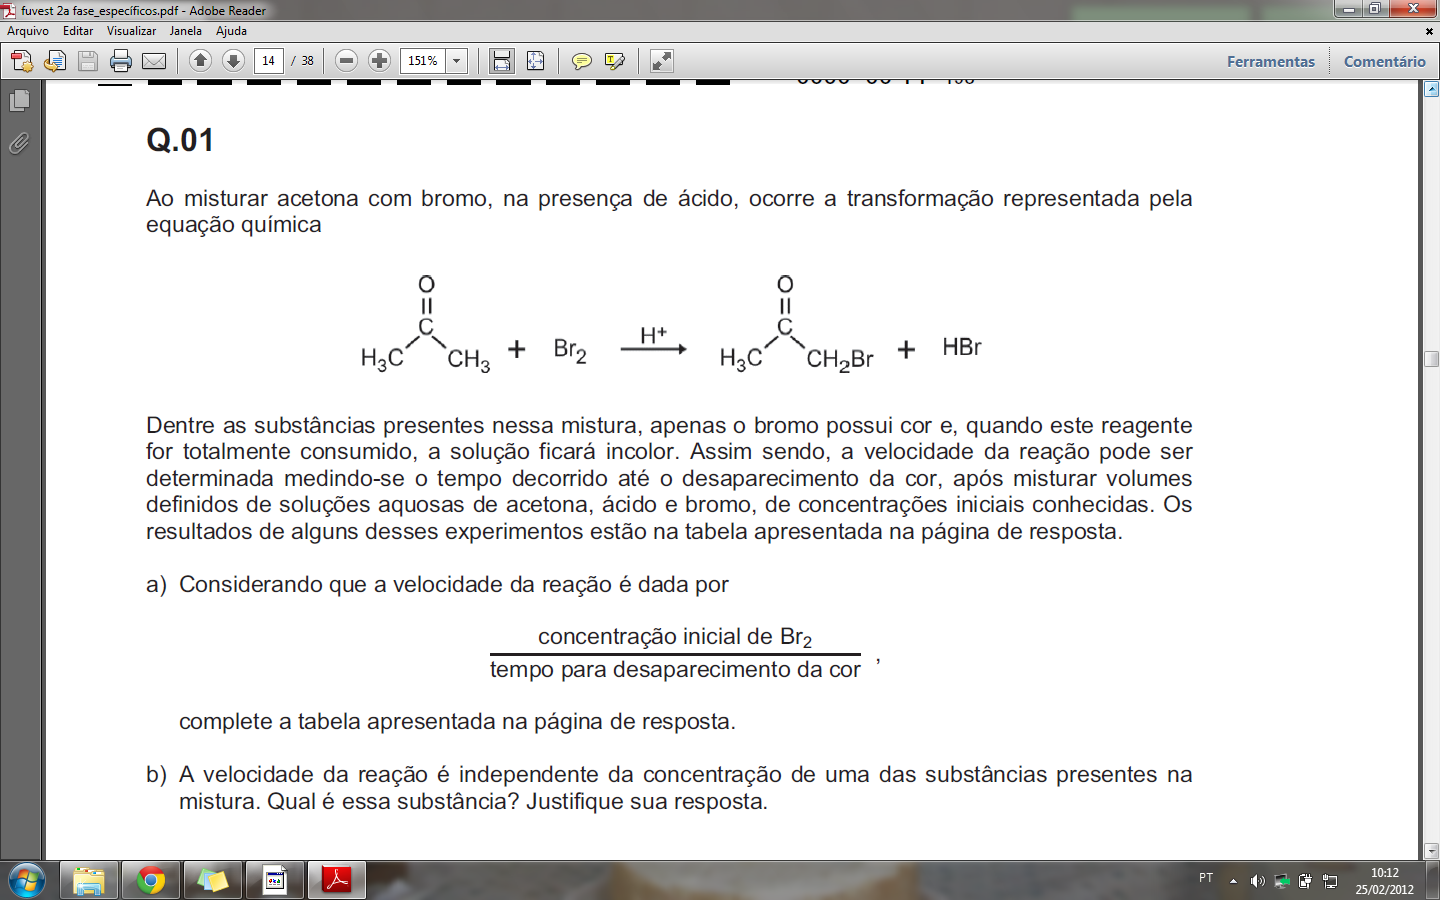 equação química: Dentre as substâncias presentes nessa mistura, apenas o bromo possui cor e, quando este reagente for